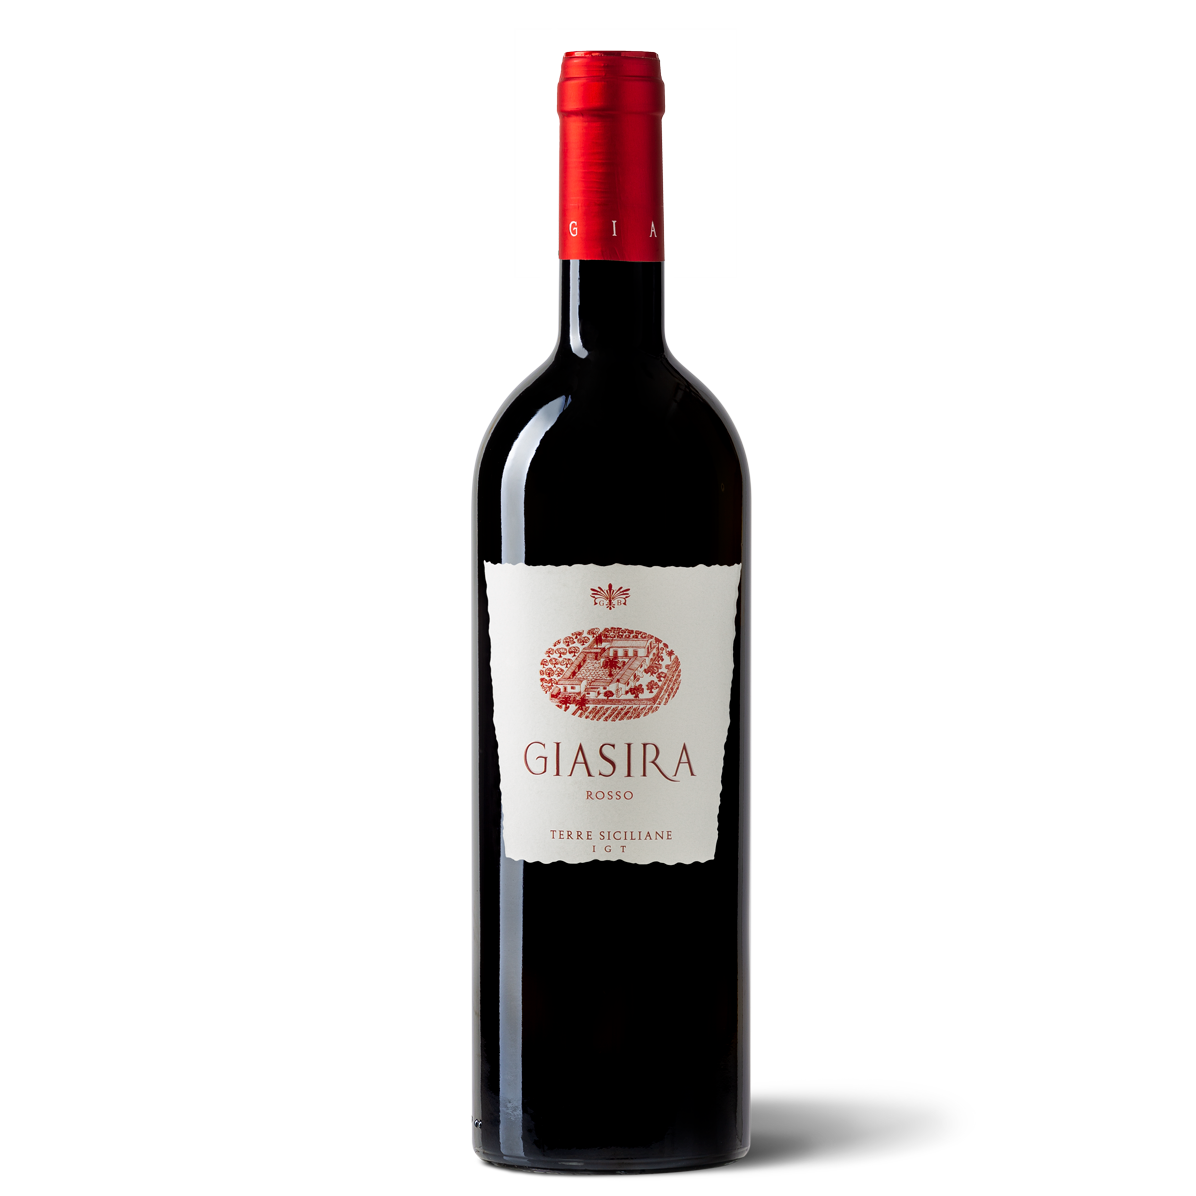 la-giasira-azienda-vinicola-bio-rosolini-rosso-1200x1200-1